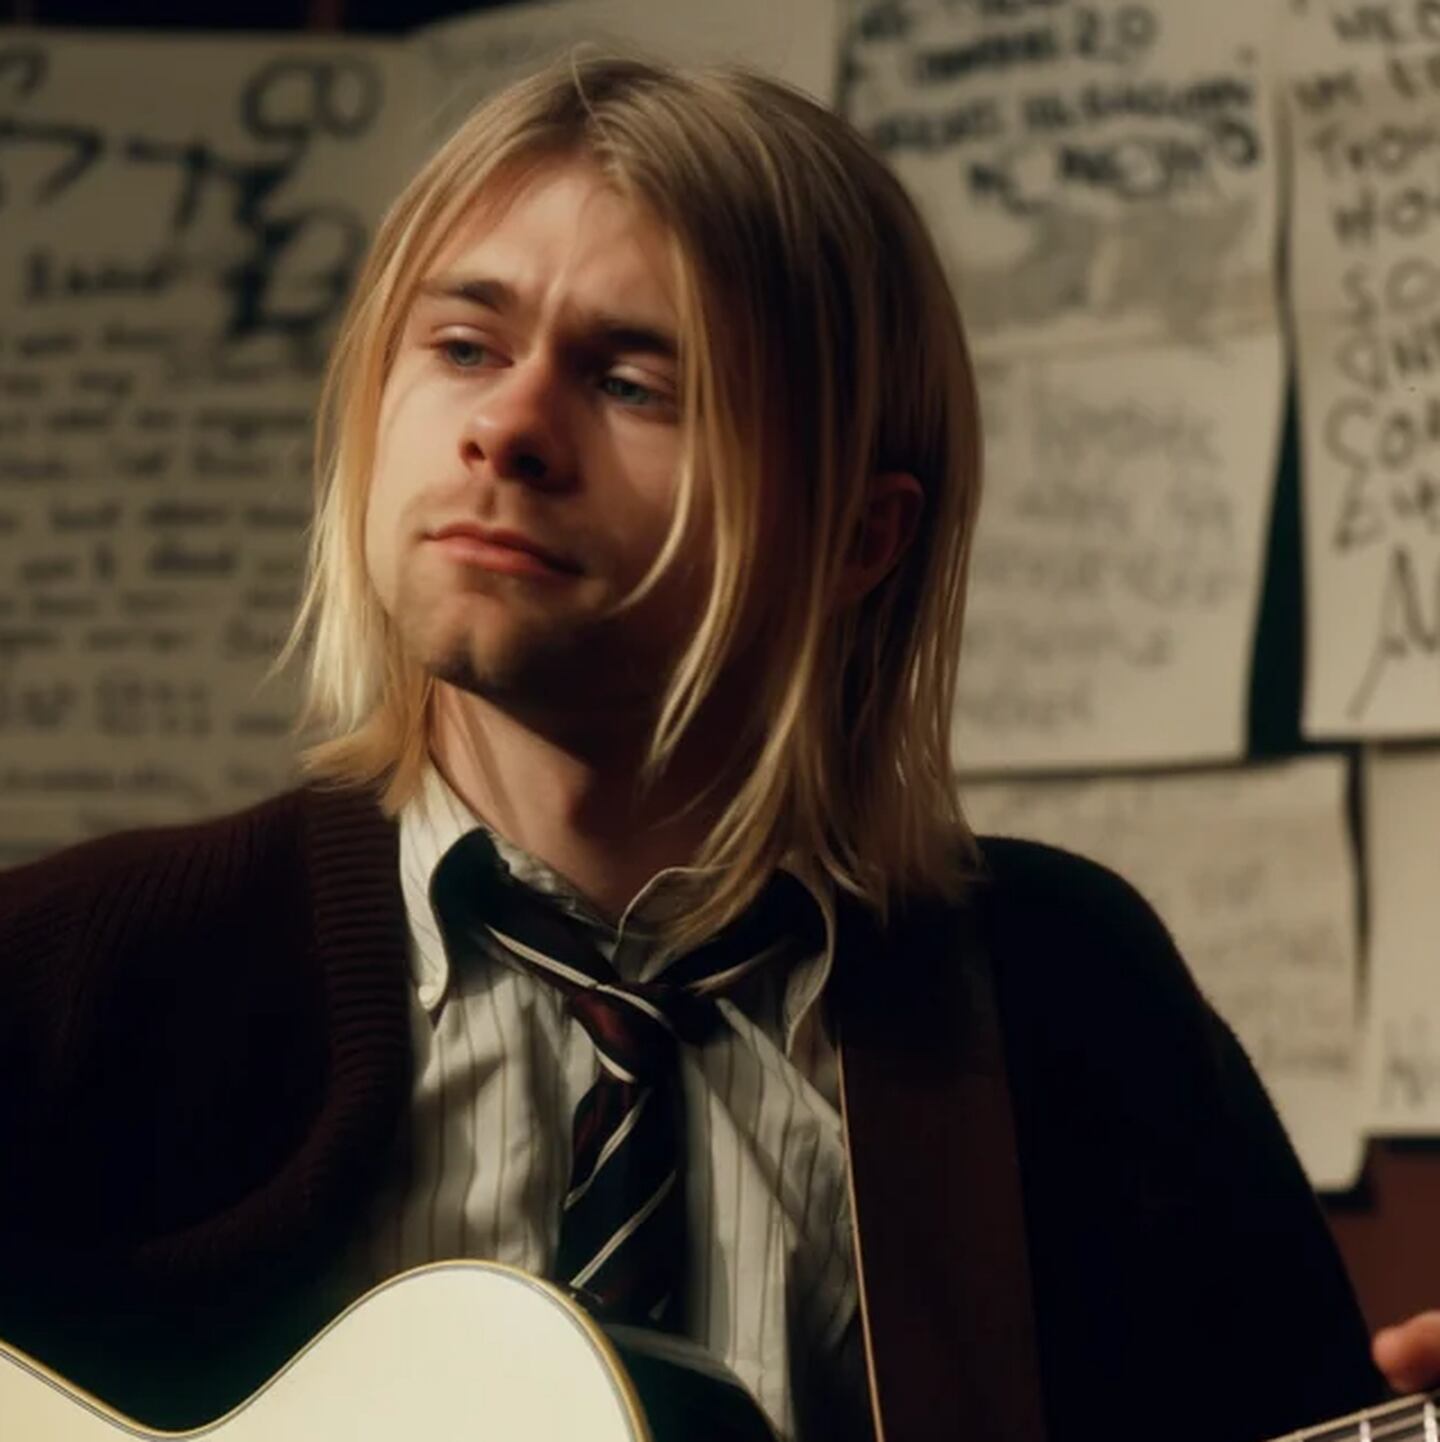 Kurt Cobain (líder y vocalista de Nirvana), como profesor de música